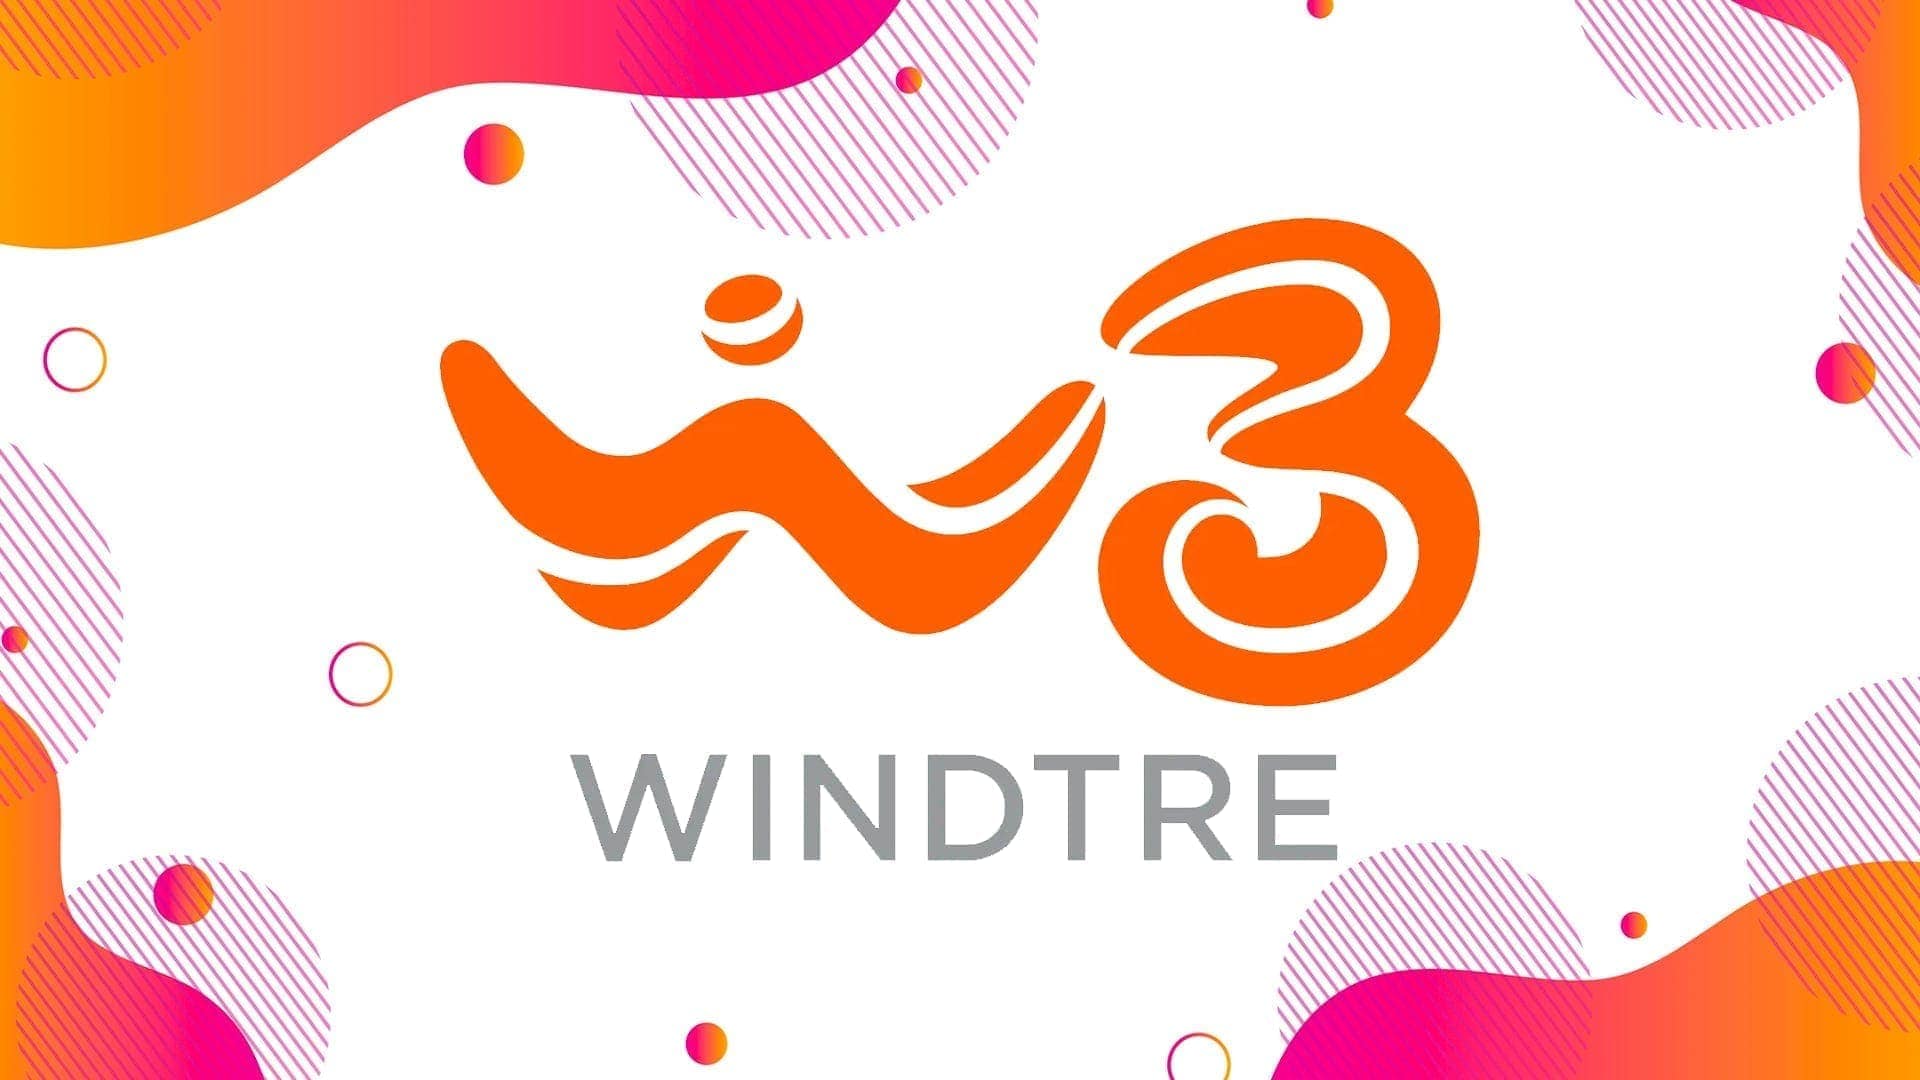 WindTre offre nuovi smartphone Android a zero rate: Motorola, Nokia, Honor e altri